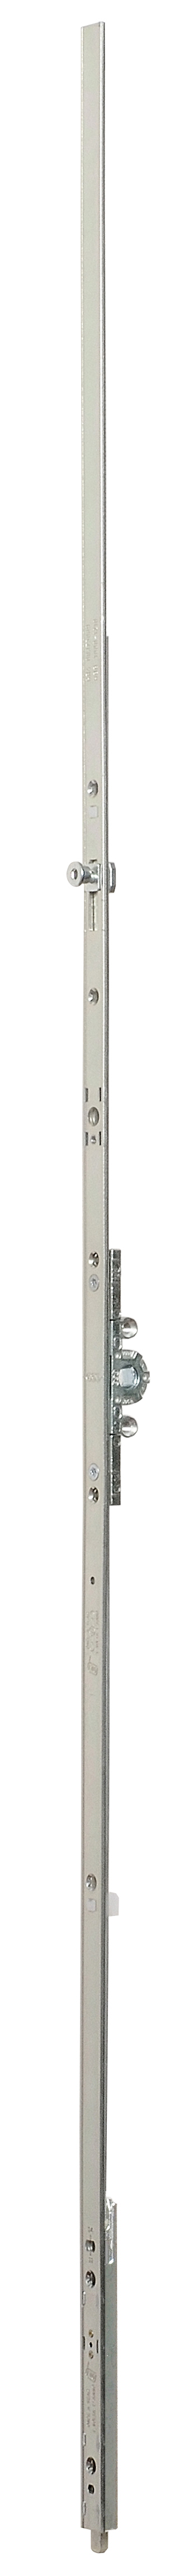 AGB -  Cremonese ARTECH anta a bandiera altezza maniglia fissa con puntale chiusura ad espansione per seconda anta - gr / dim. 02 - entrata 15 - alt. man. 280 - lbb/hbb 600 - 801